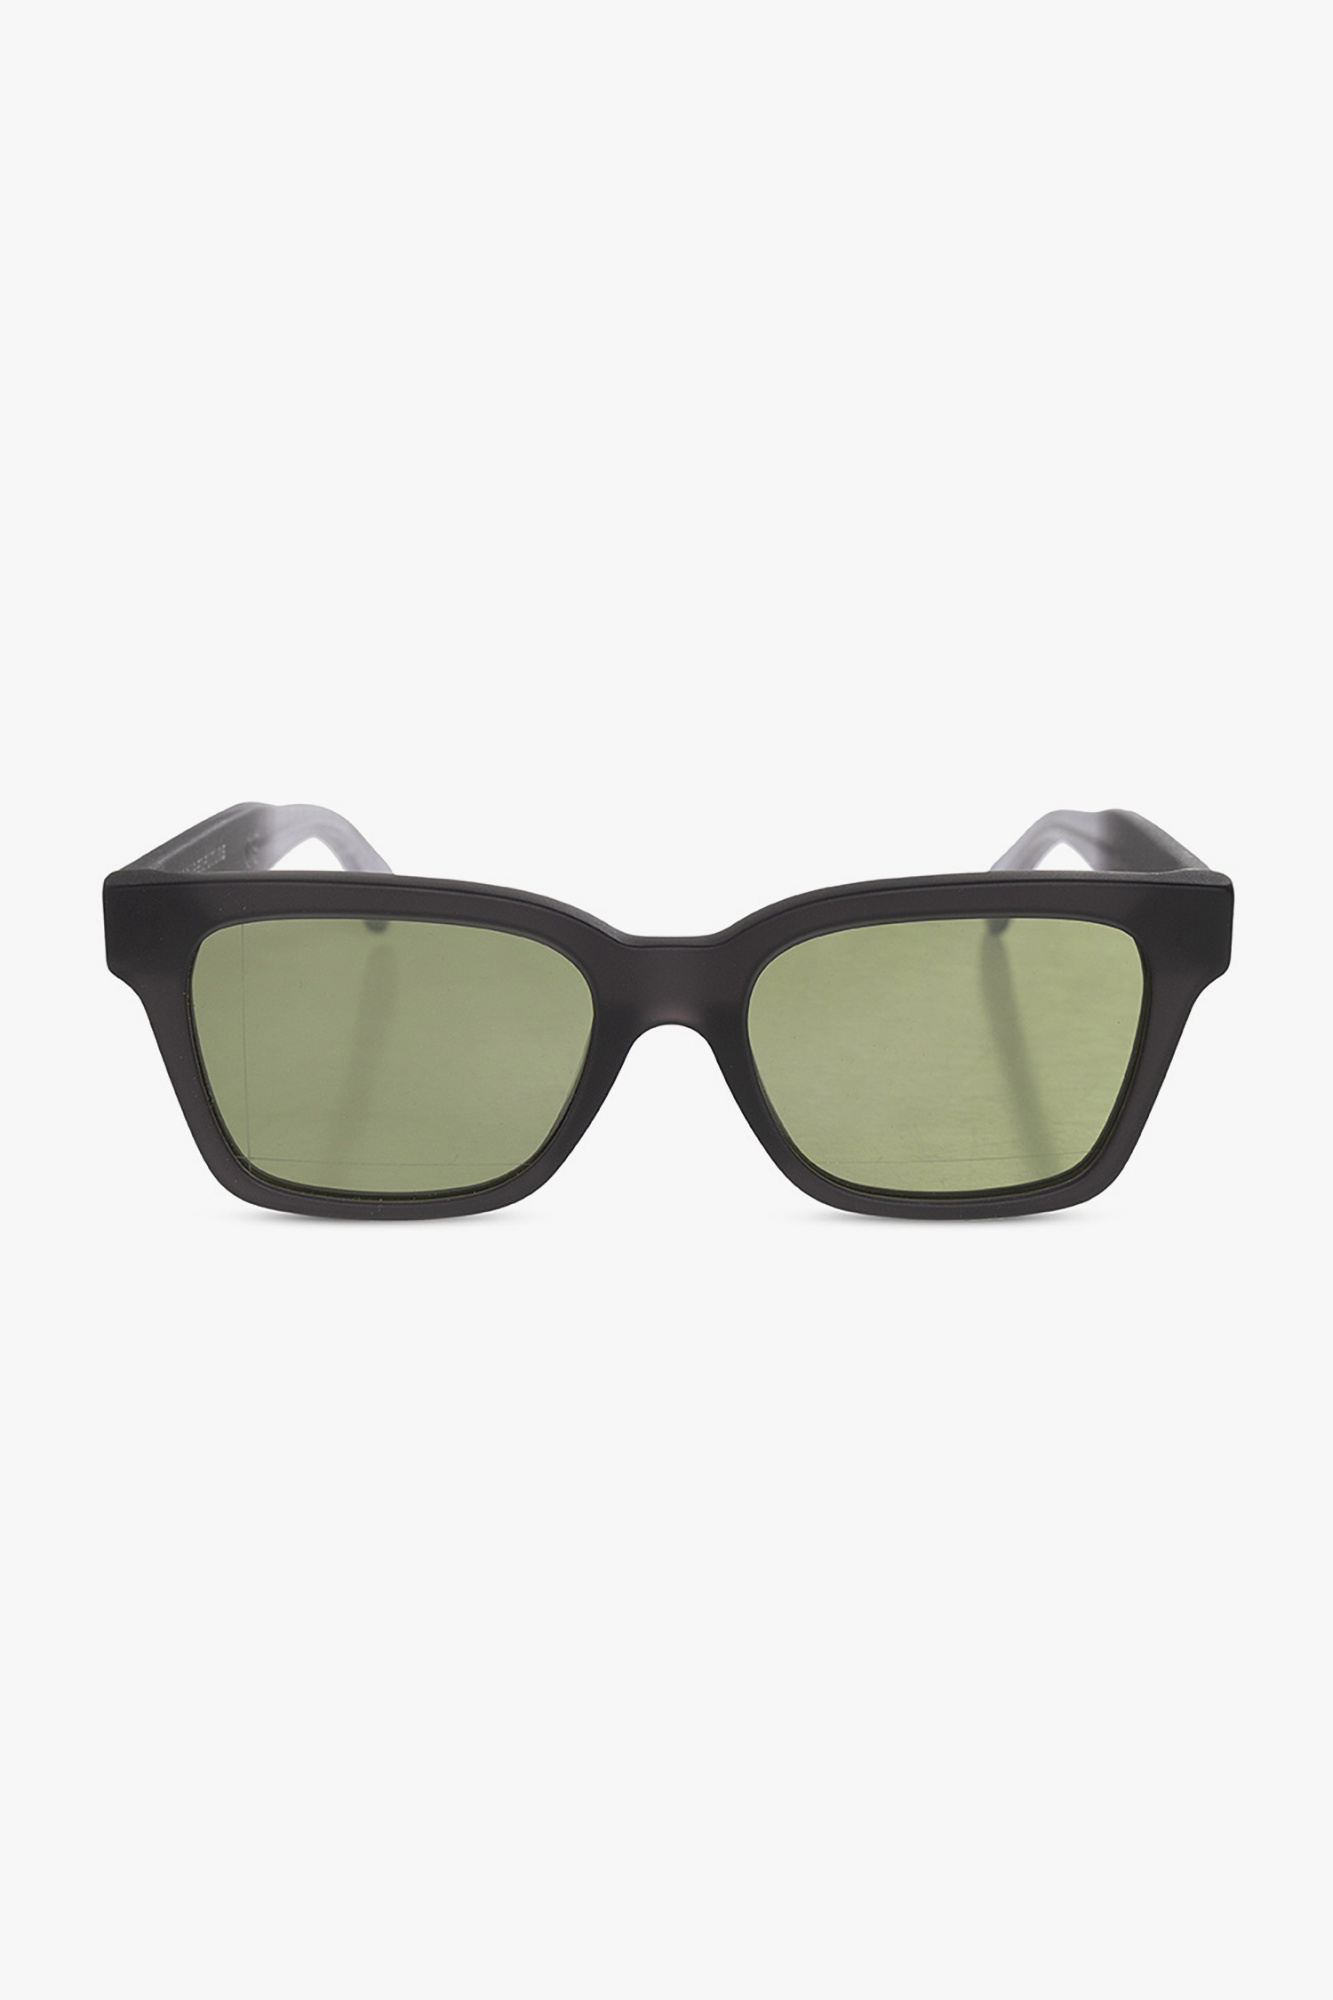 WALL  COLD  IetpShops Morocco  dior sunglasses Gray inside out 2  acetate sunglasses Gray A  Sunglasses Gray PO3256S 108033